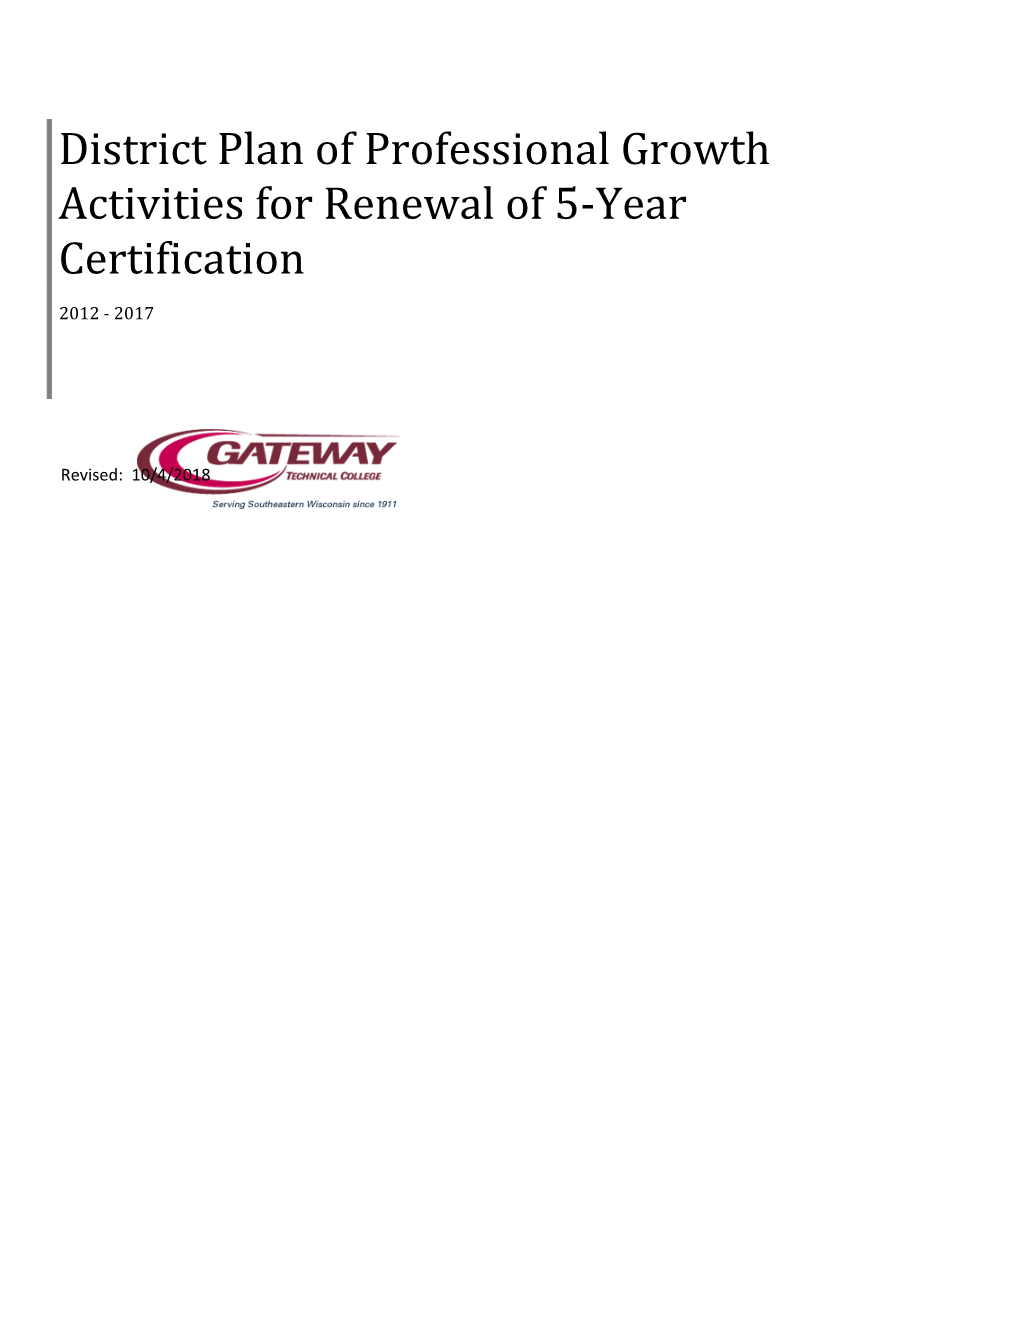 Five-Year Certification Renewal Plan